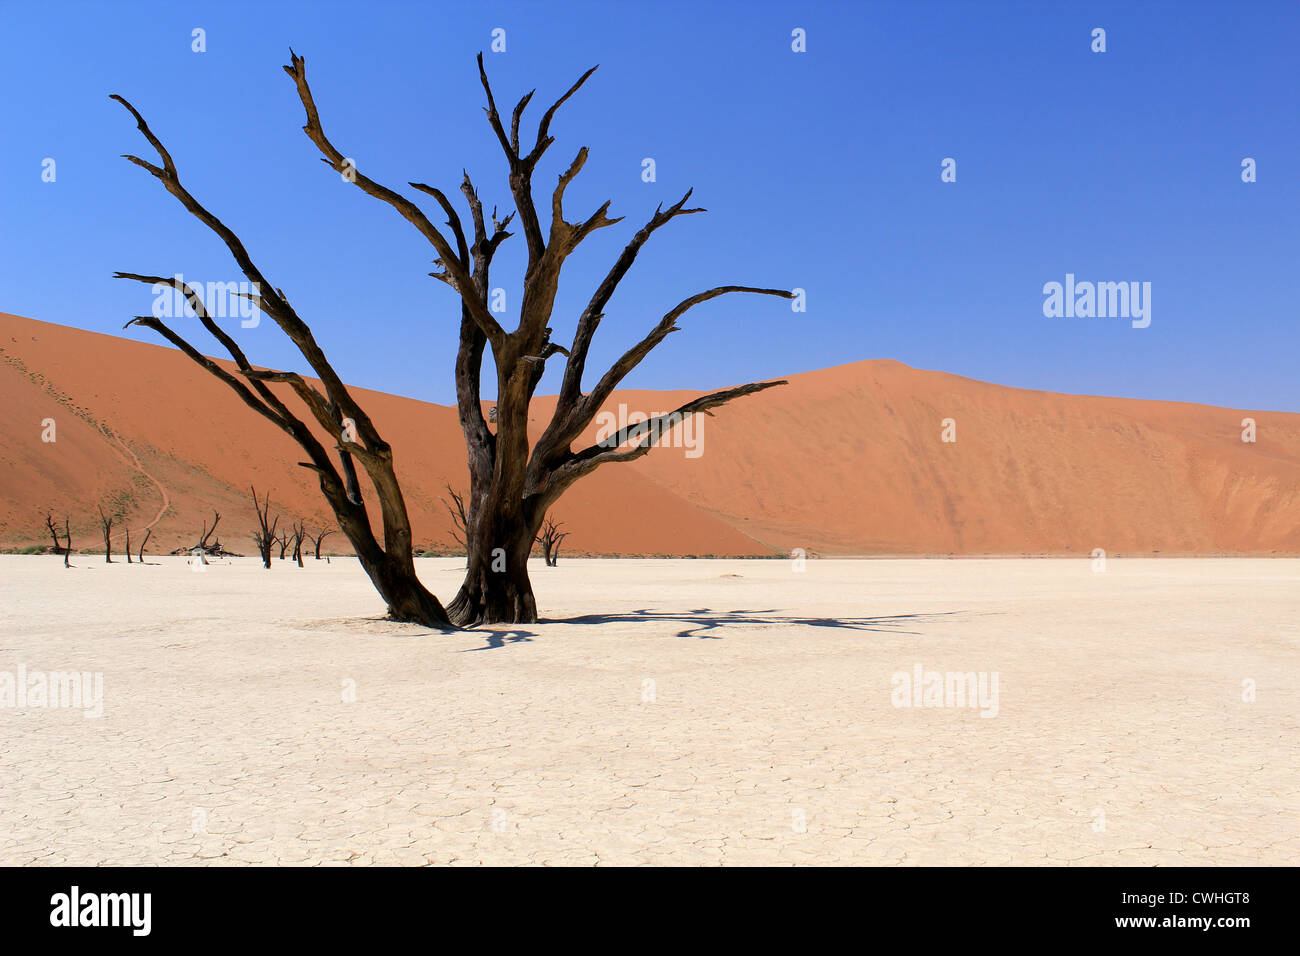 Sossusvlei dead valley landscape in the Nanib desert near Sesriem, Namibia Stock Photo